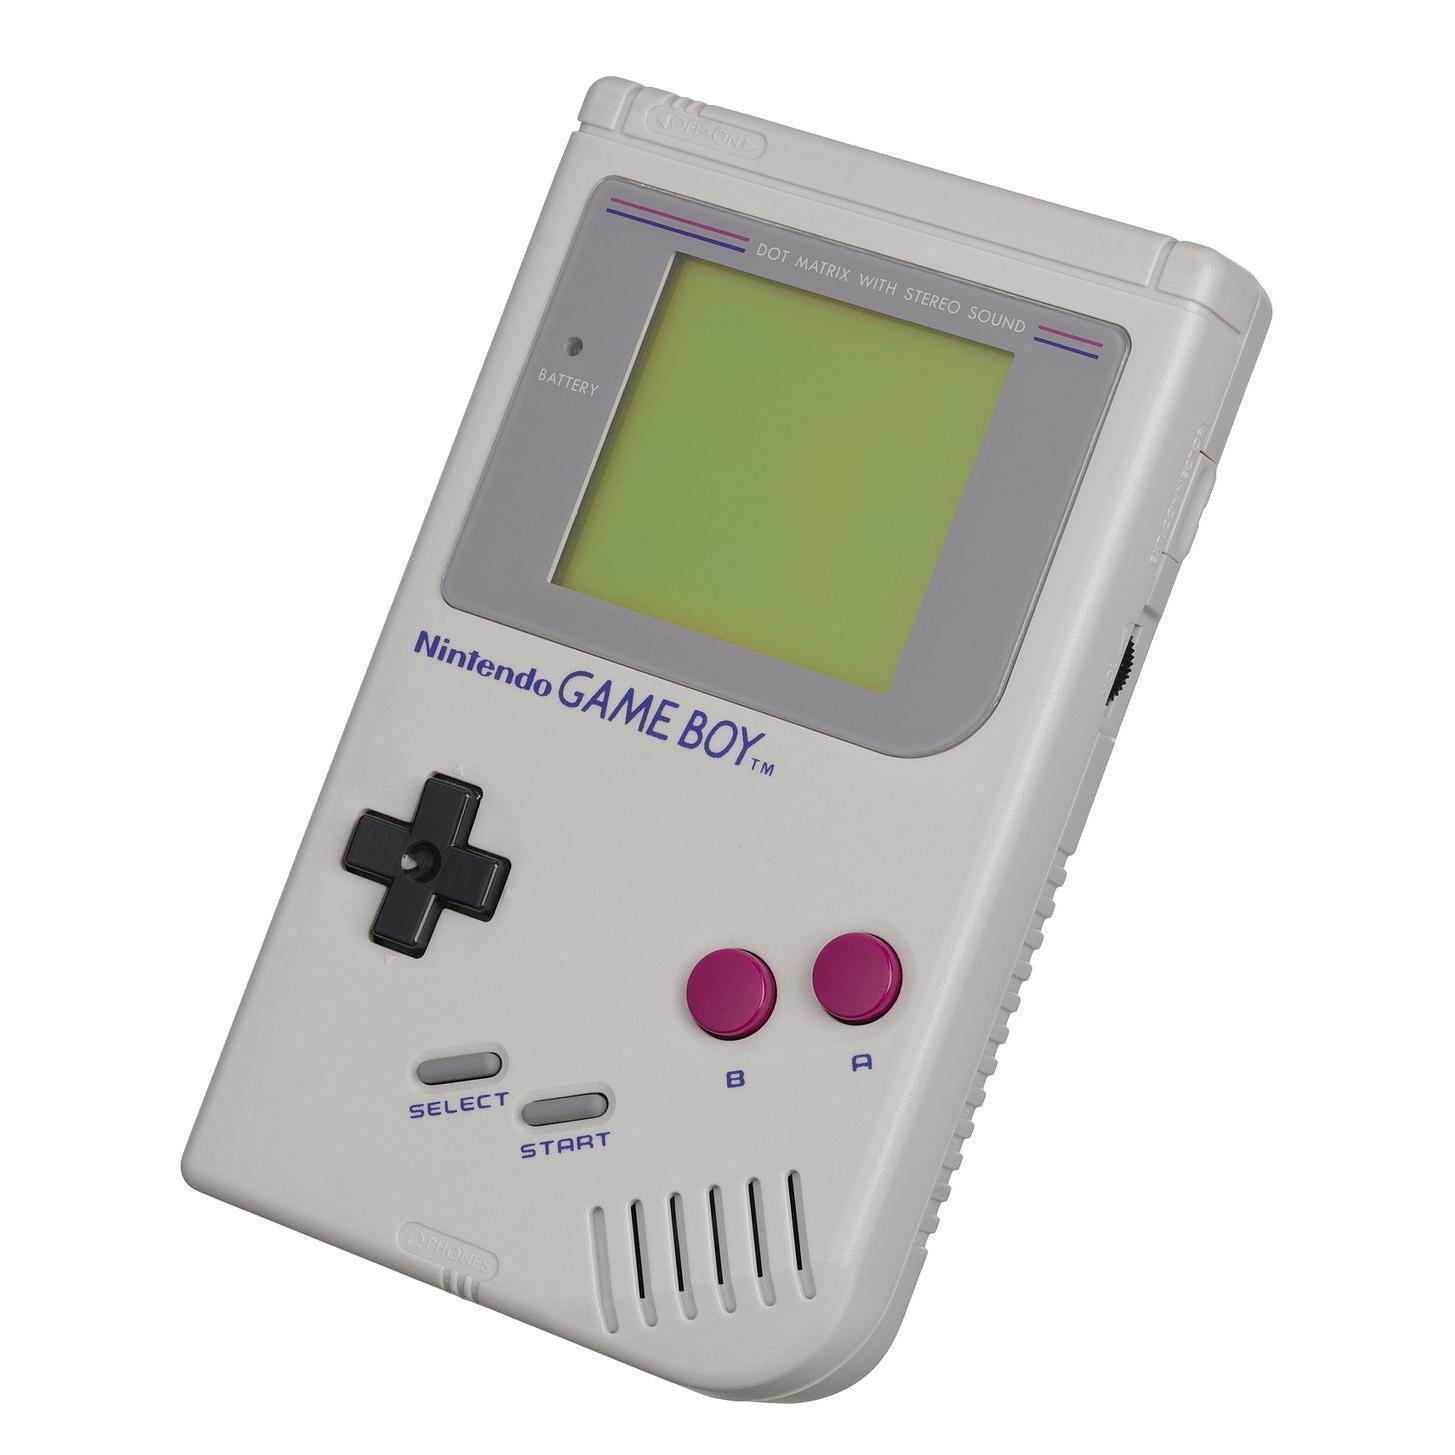 Nintendo Game Boy inkl. Spil | grå | TETRIS Version) | 1416 kr. | Nu med en 30-dages prøveperiode